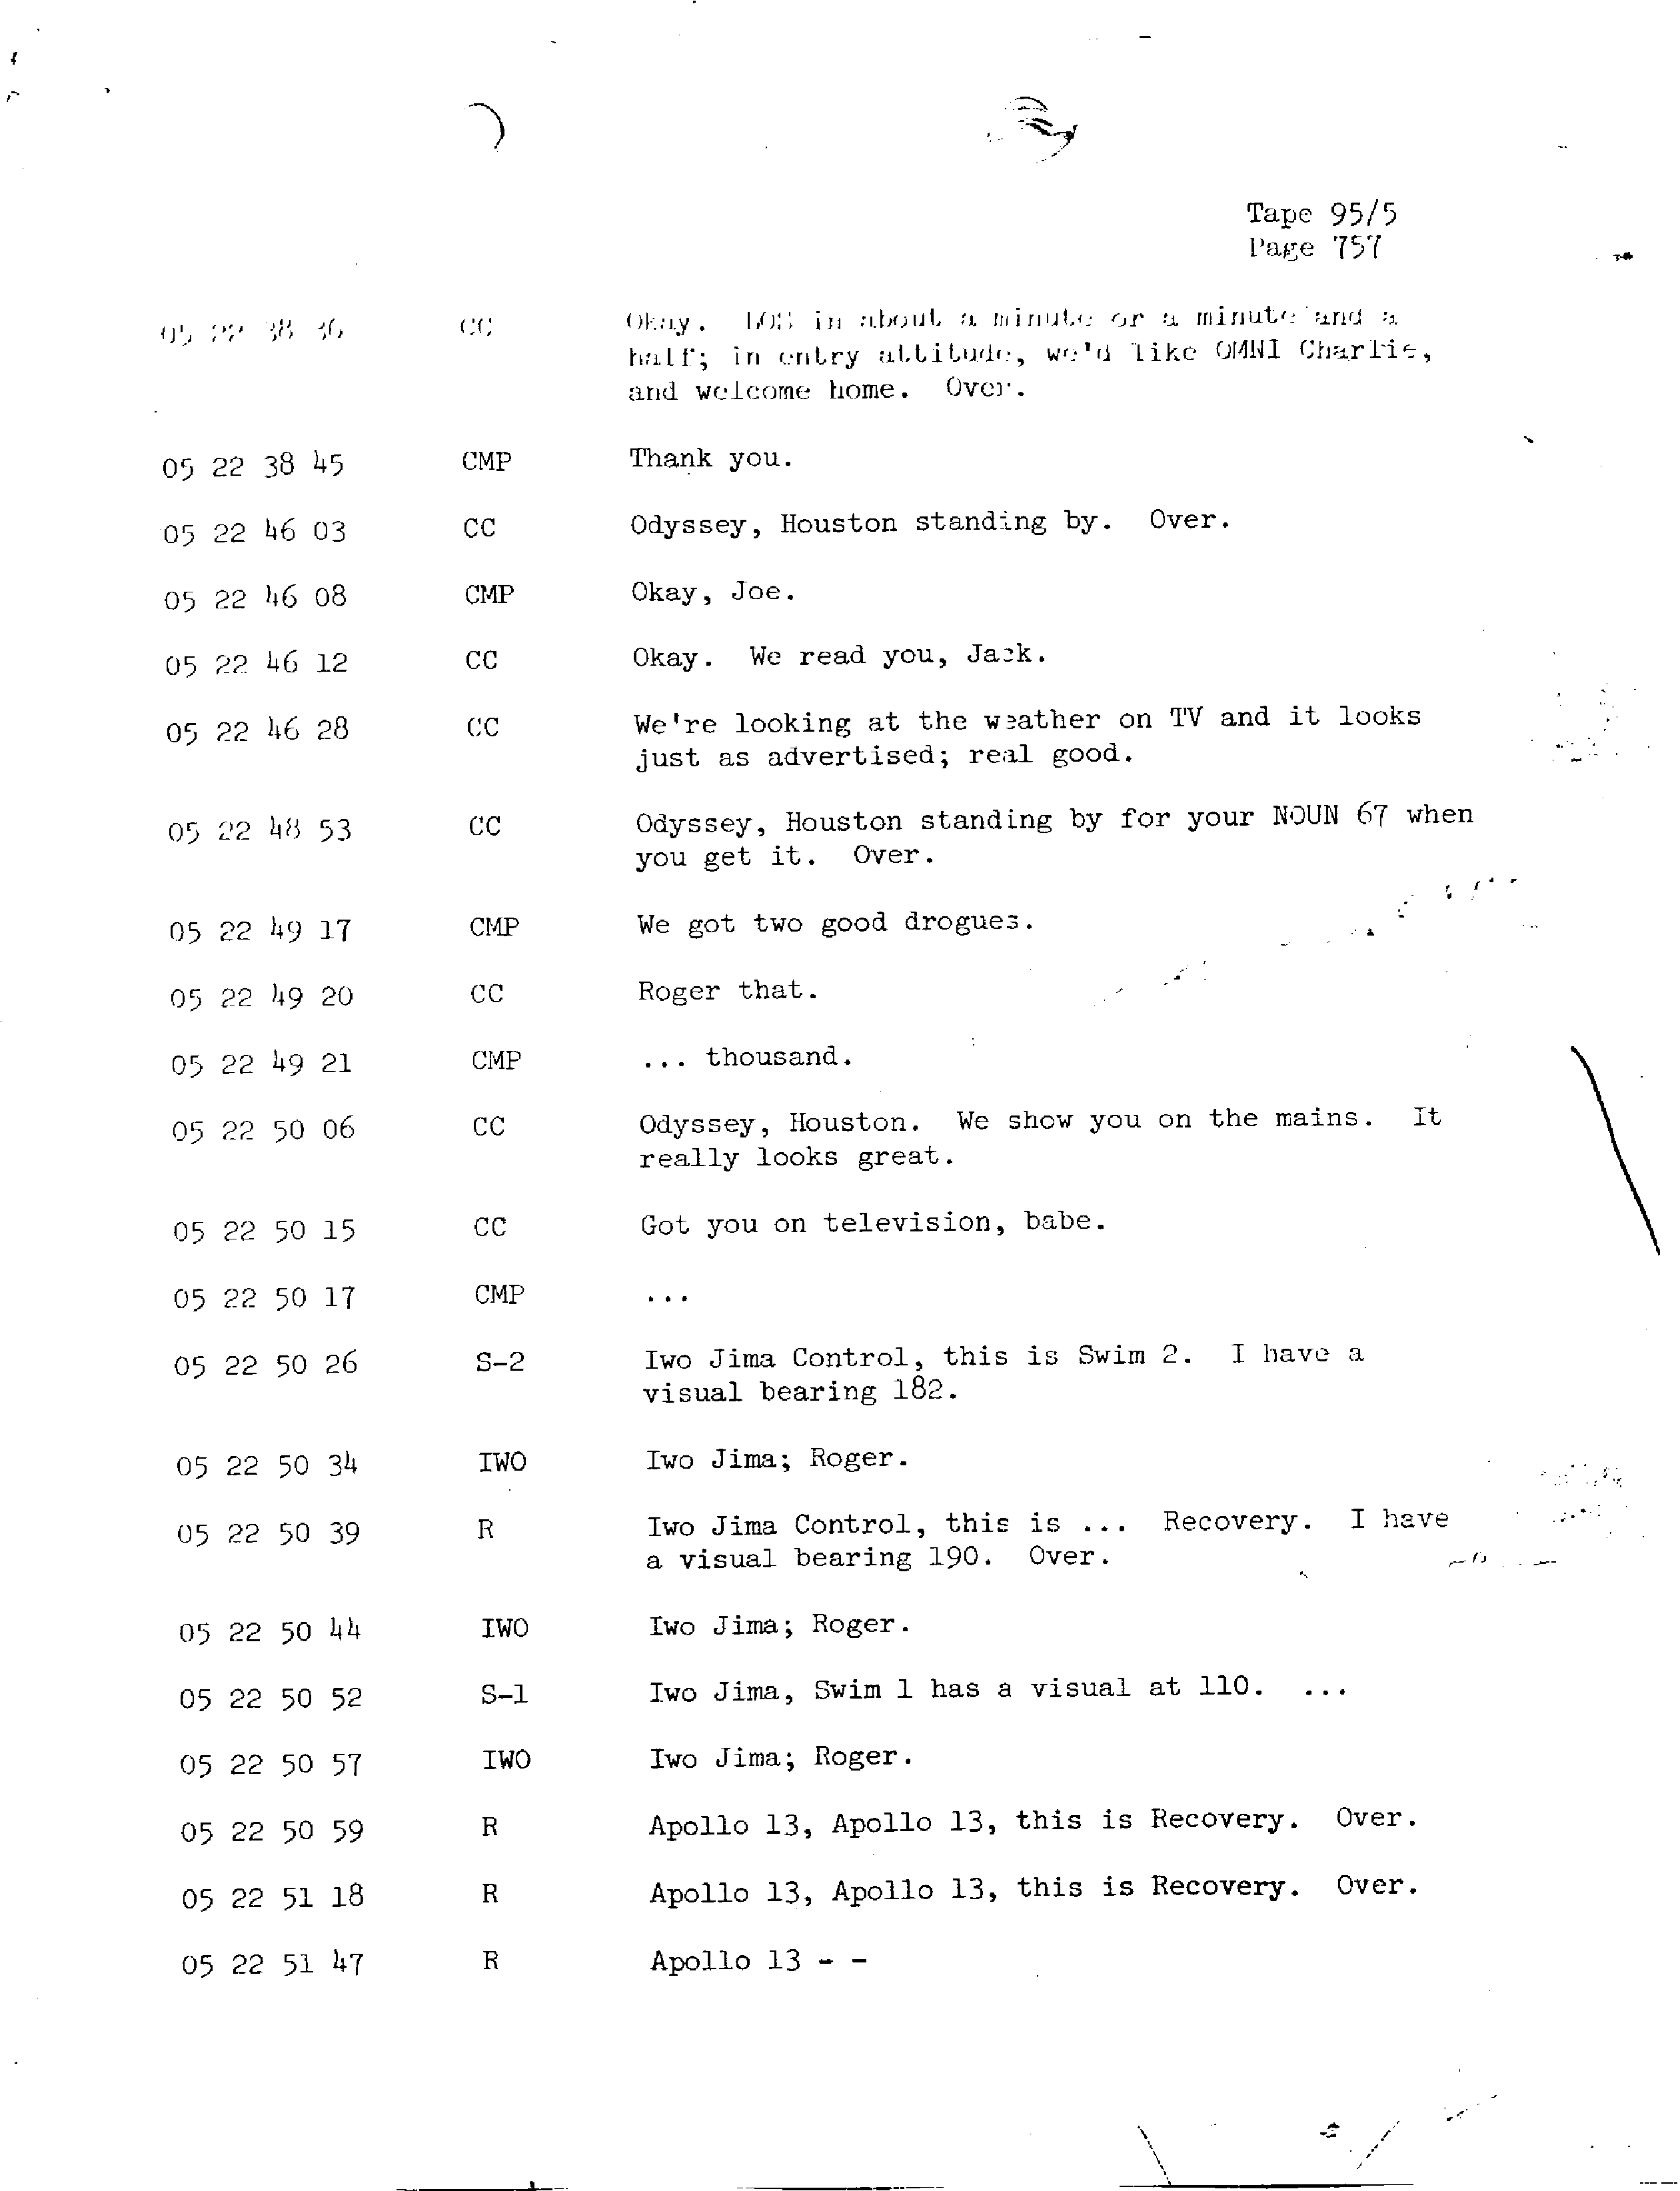 Page 764 of Apollo 13’s original transcript